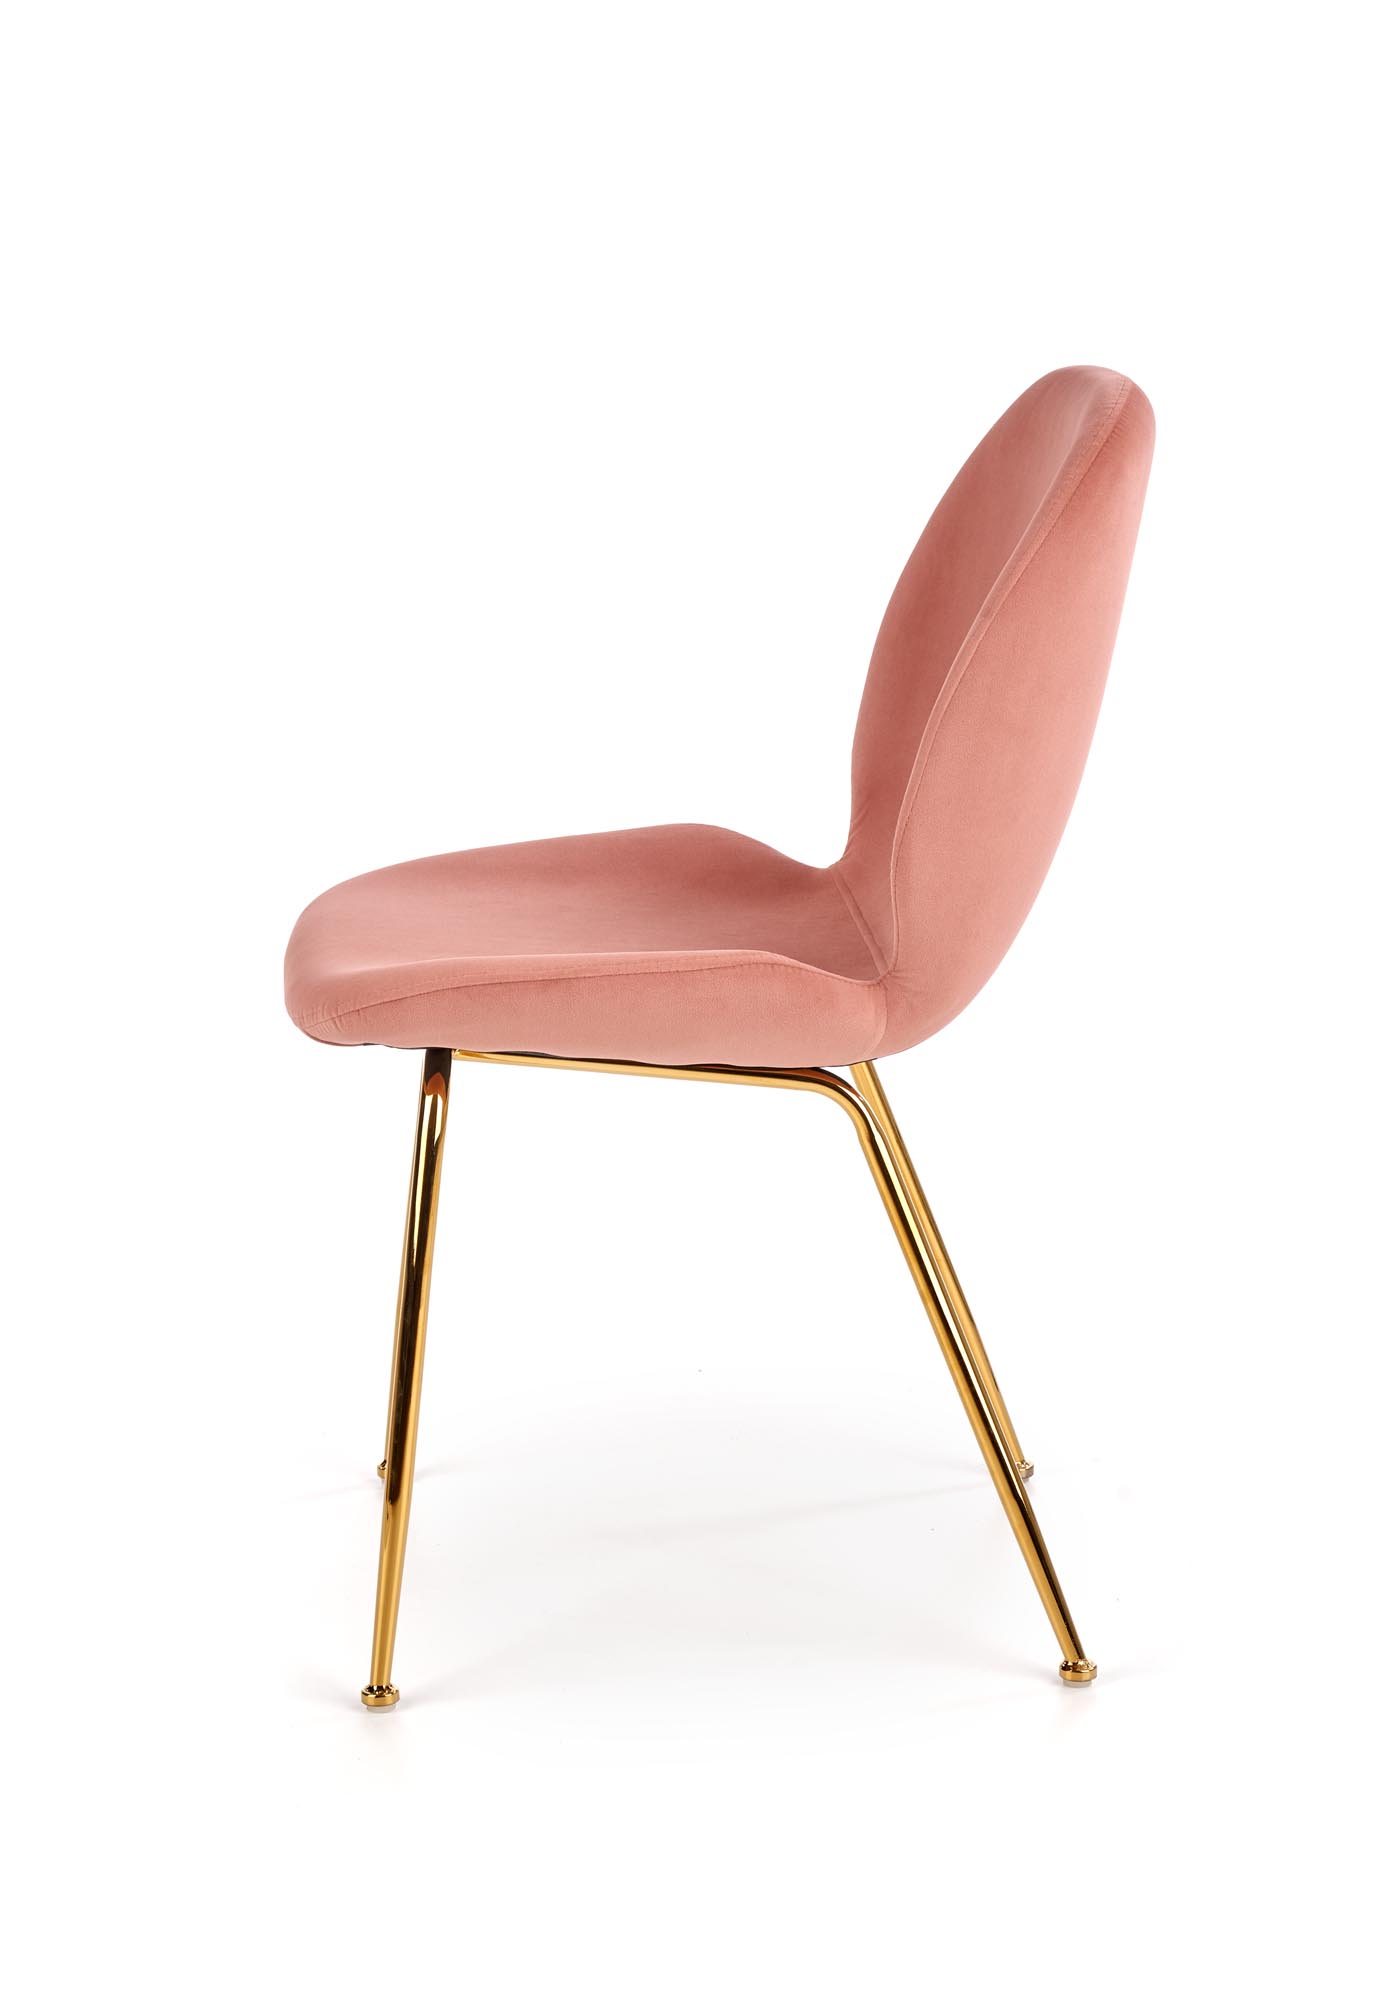 K381 szék - rózsaszín / sárga Židle k381 - Růžová / Žlutý